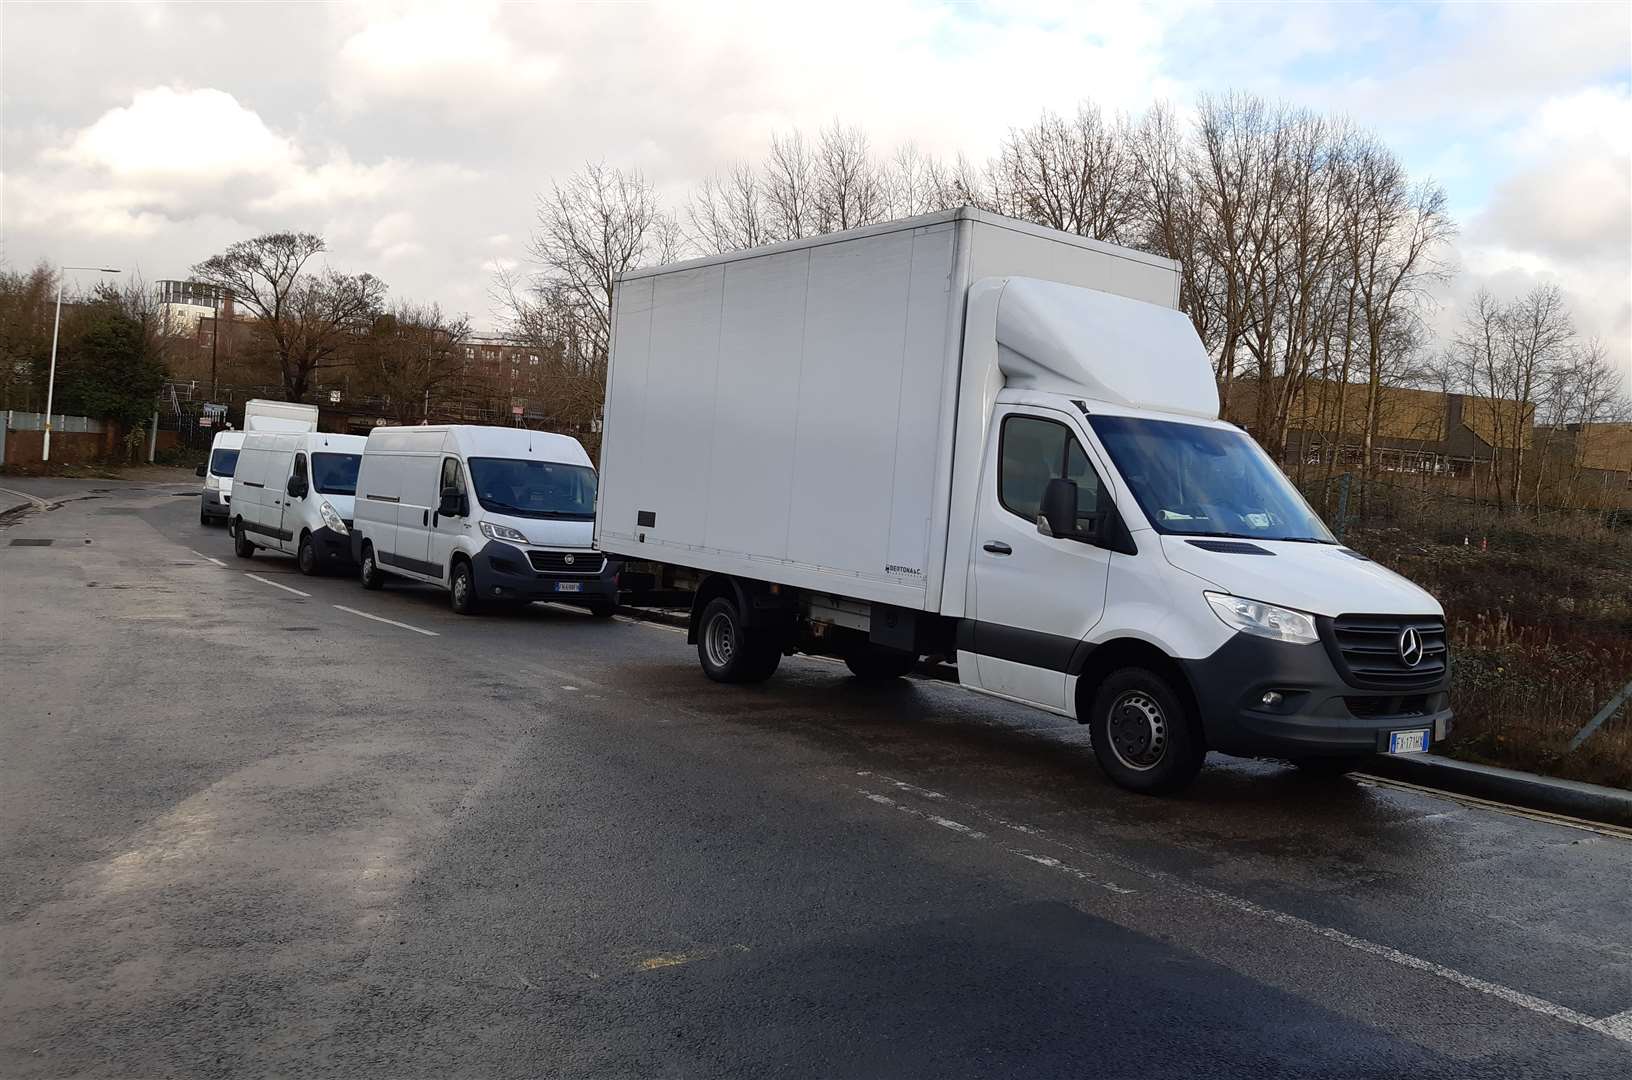 Vans have been parked in Gasworks Lane